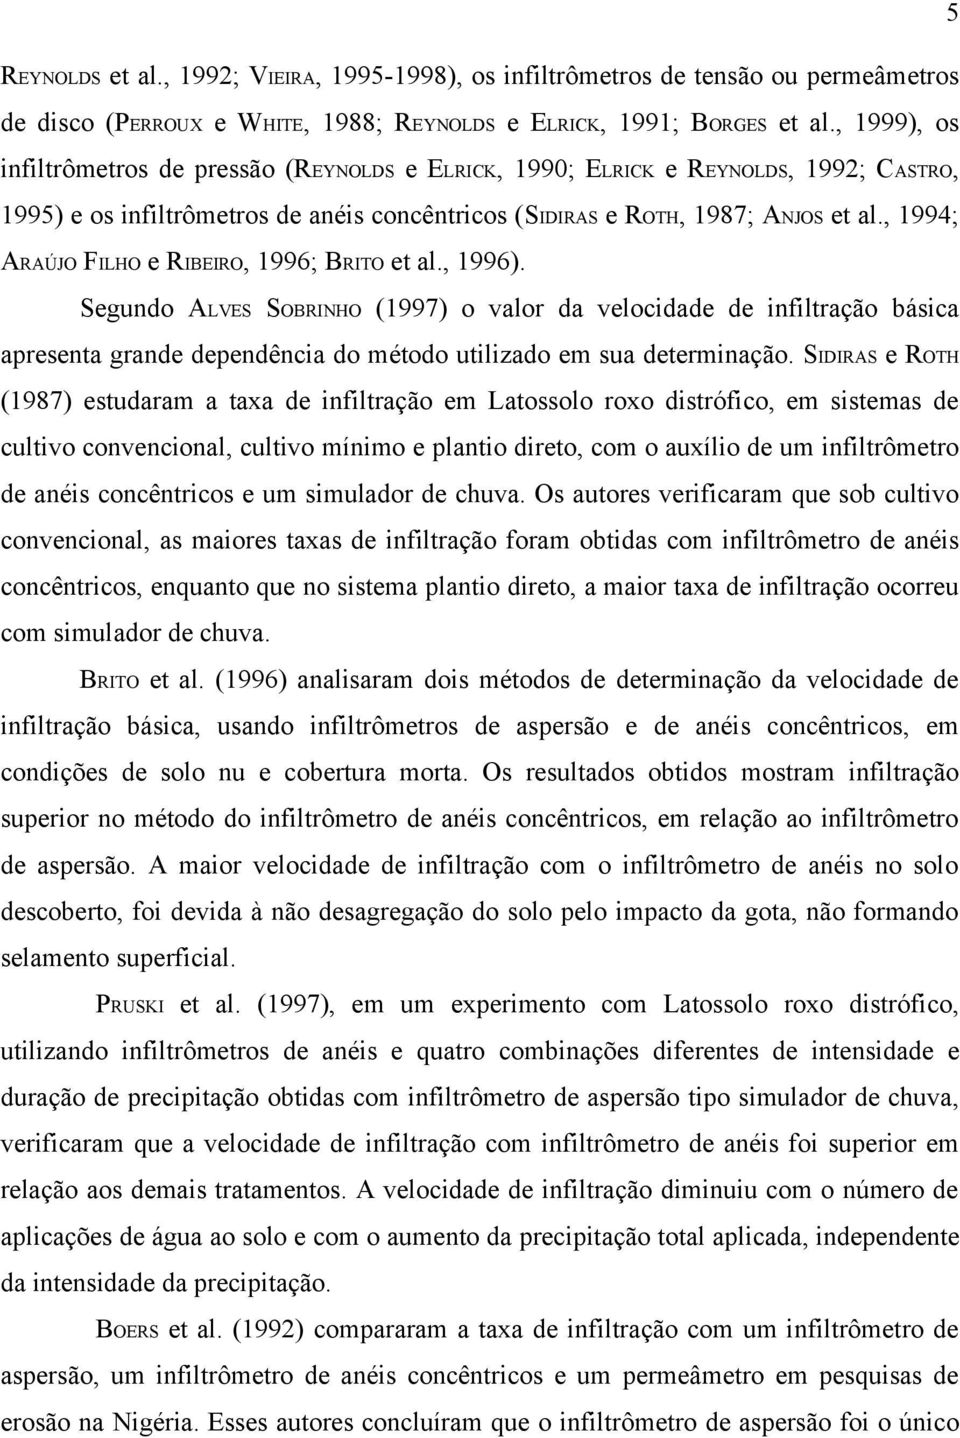 , 1994; ARAÚJO FILHO e RIBEIRO, 1996; BRITO et al., 1996).